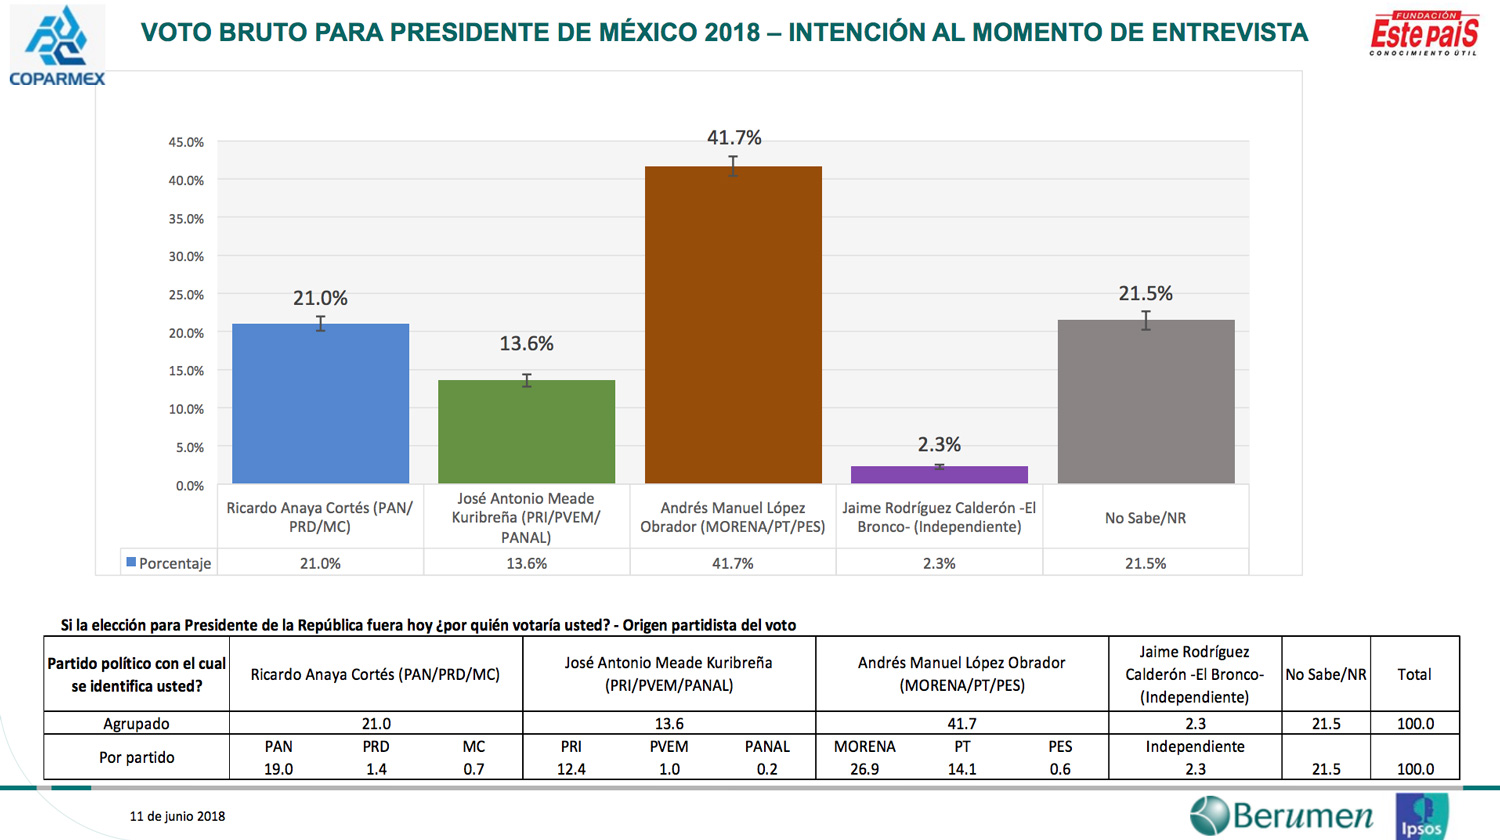 Encuesta de preferencias electorales de Coparmex. Publicación: 12 de junio de 2018.